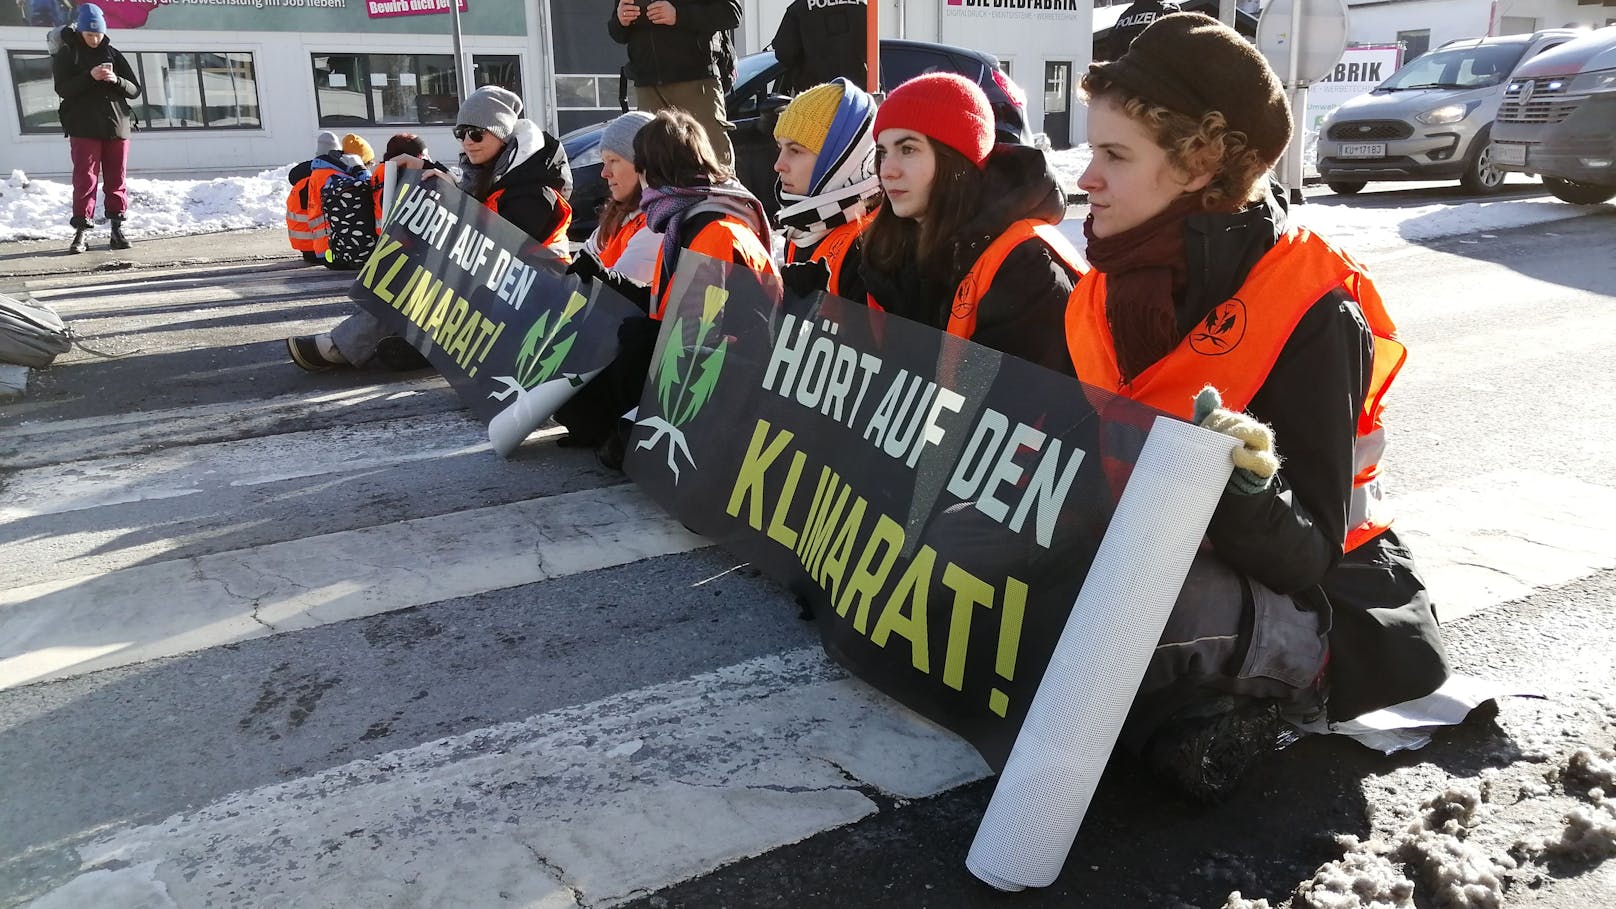 "Wir machen weiter": Klimakleber mit knallharter Ansage